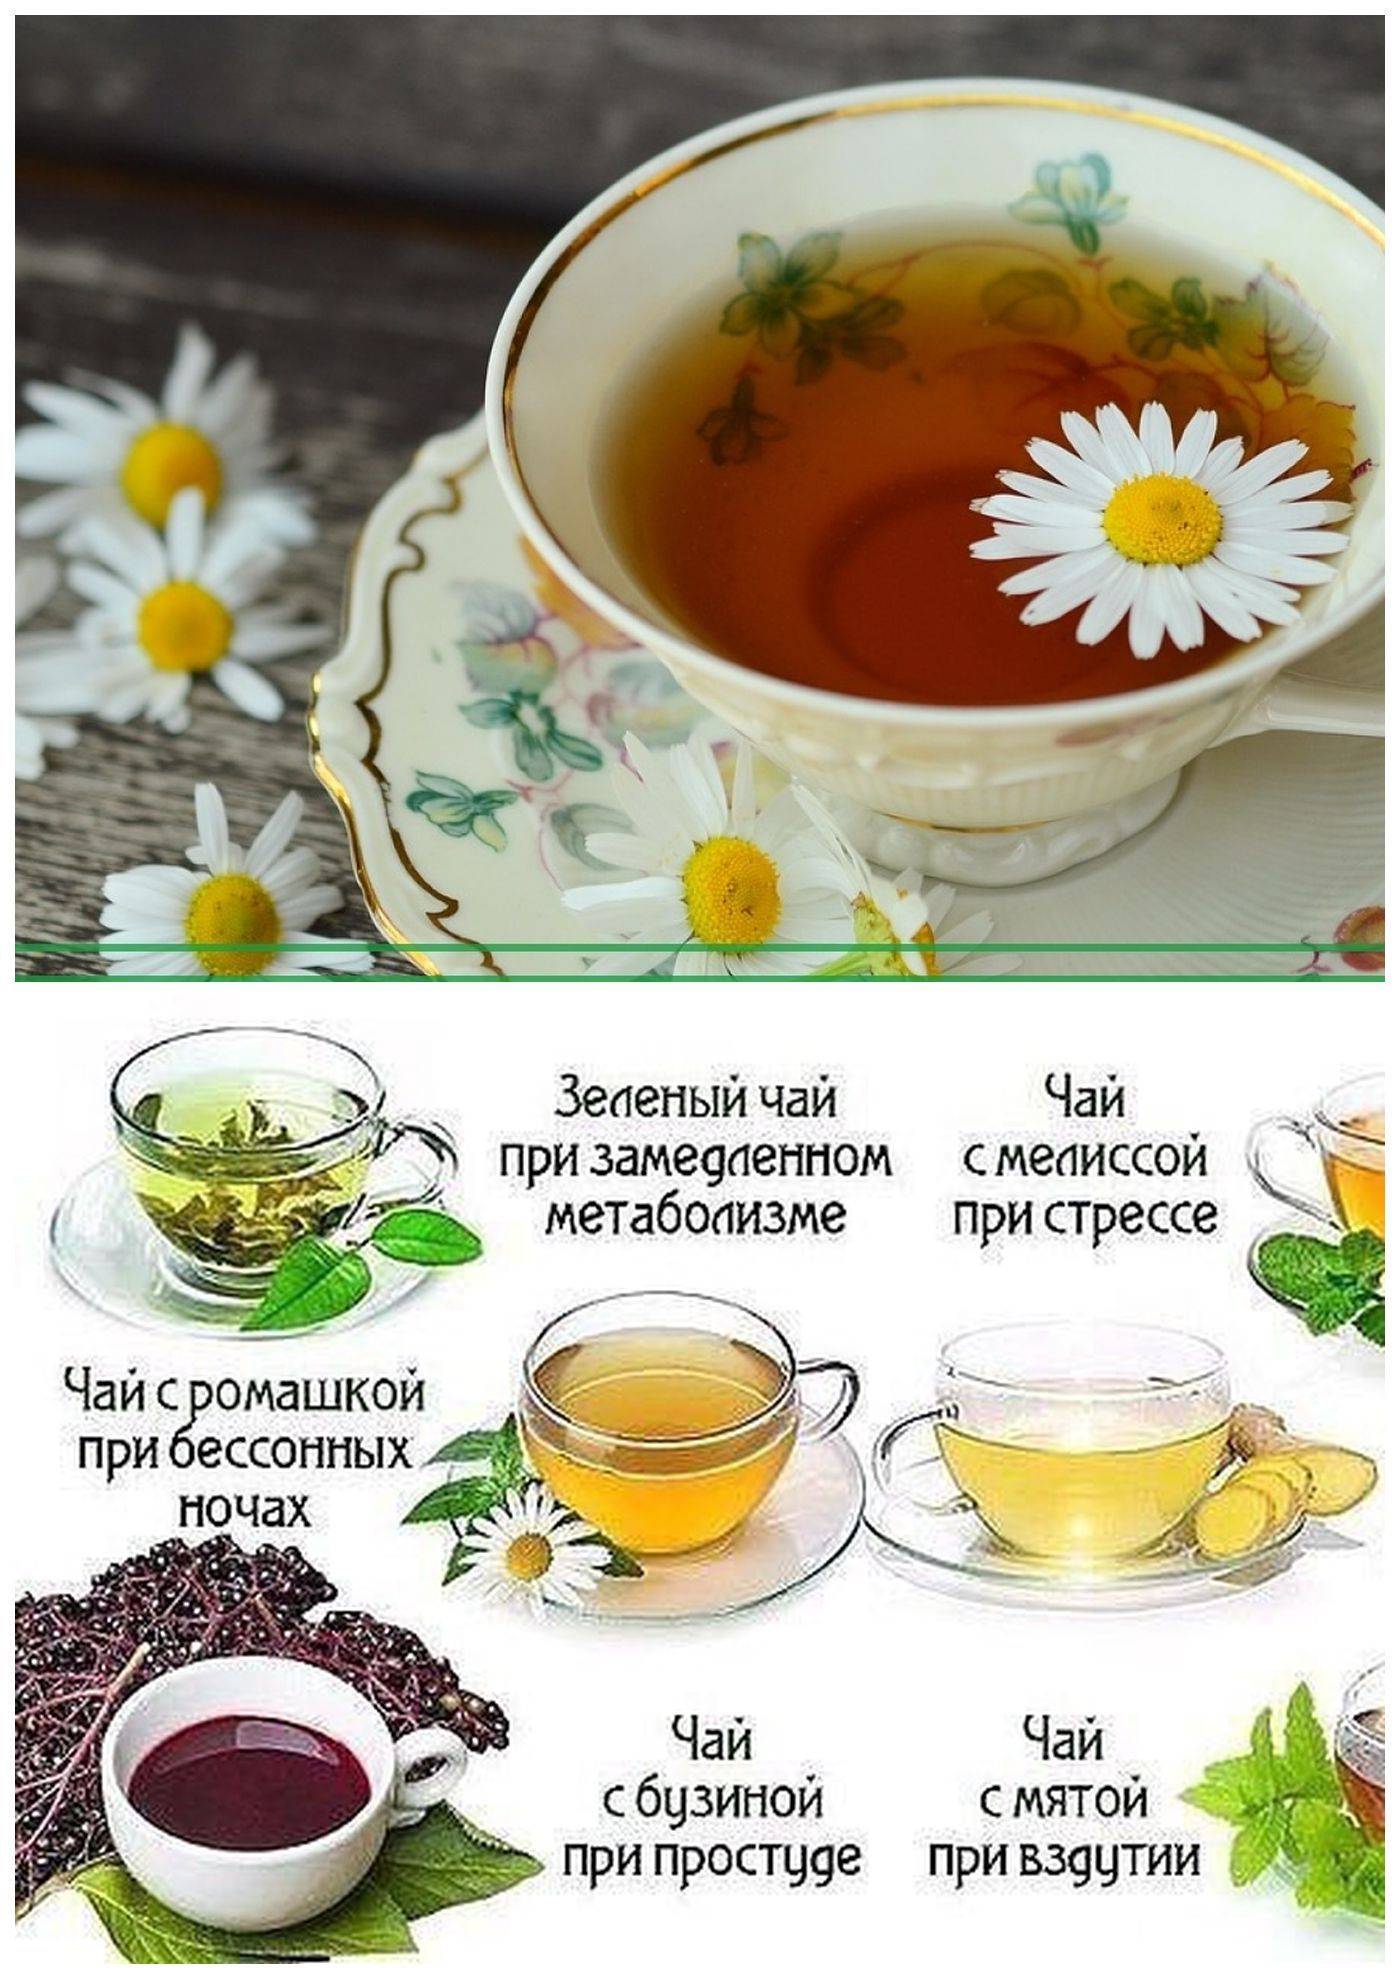 Листья шалфея: полезные свойства и противопоказания, инструкция по применению для приготовления чая, польза и вред фиточая в пакетиках для здоровья